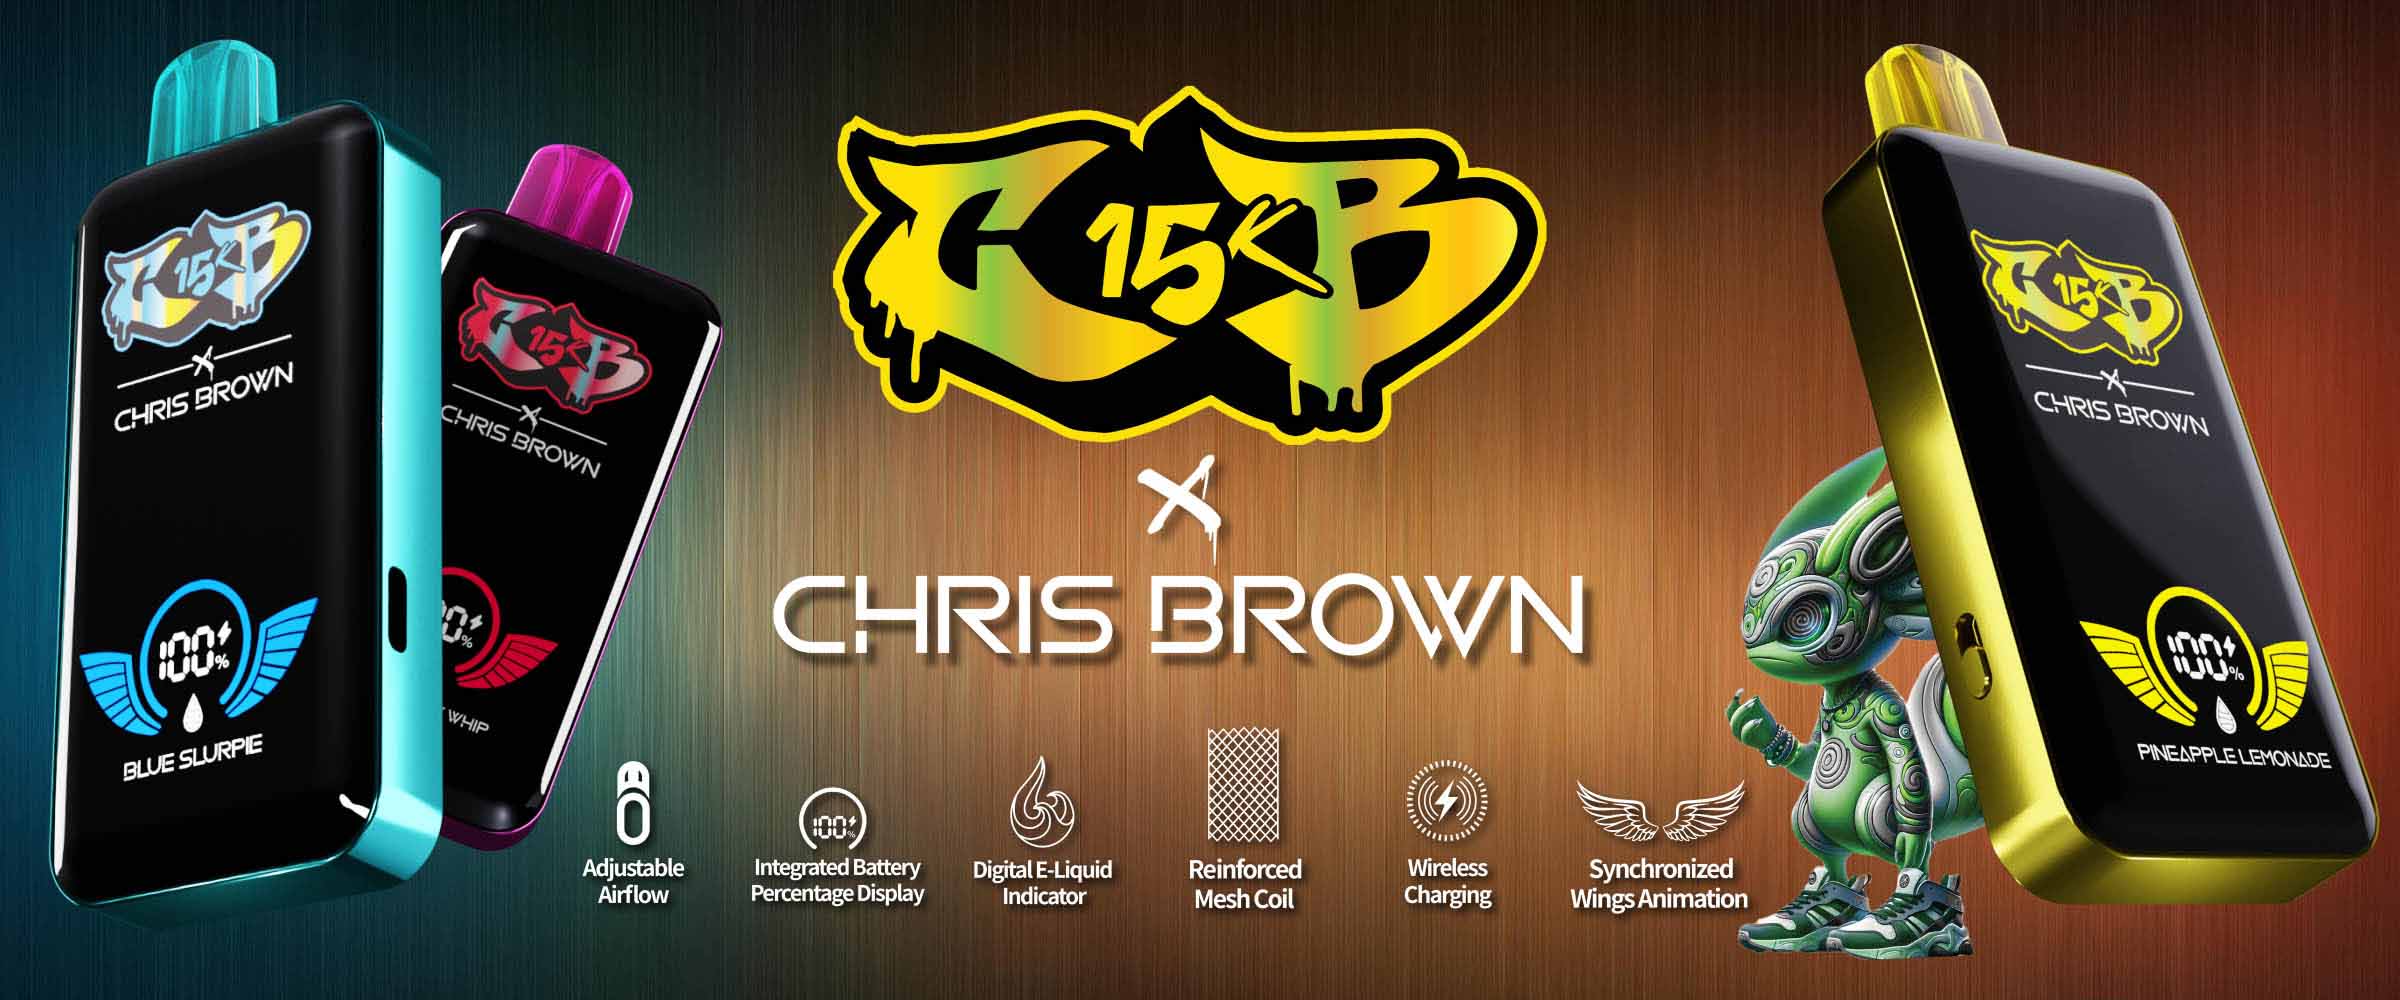 Chris Brown Vape CB15K Banner 3